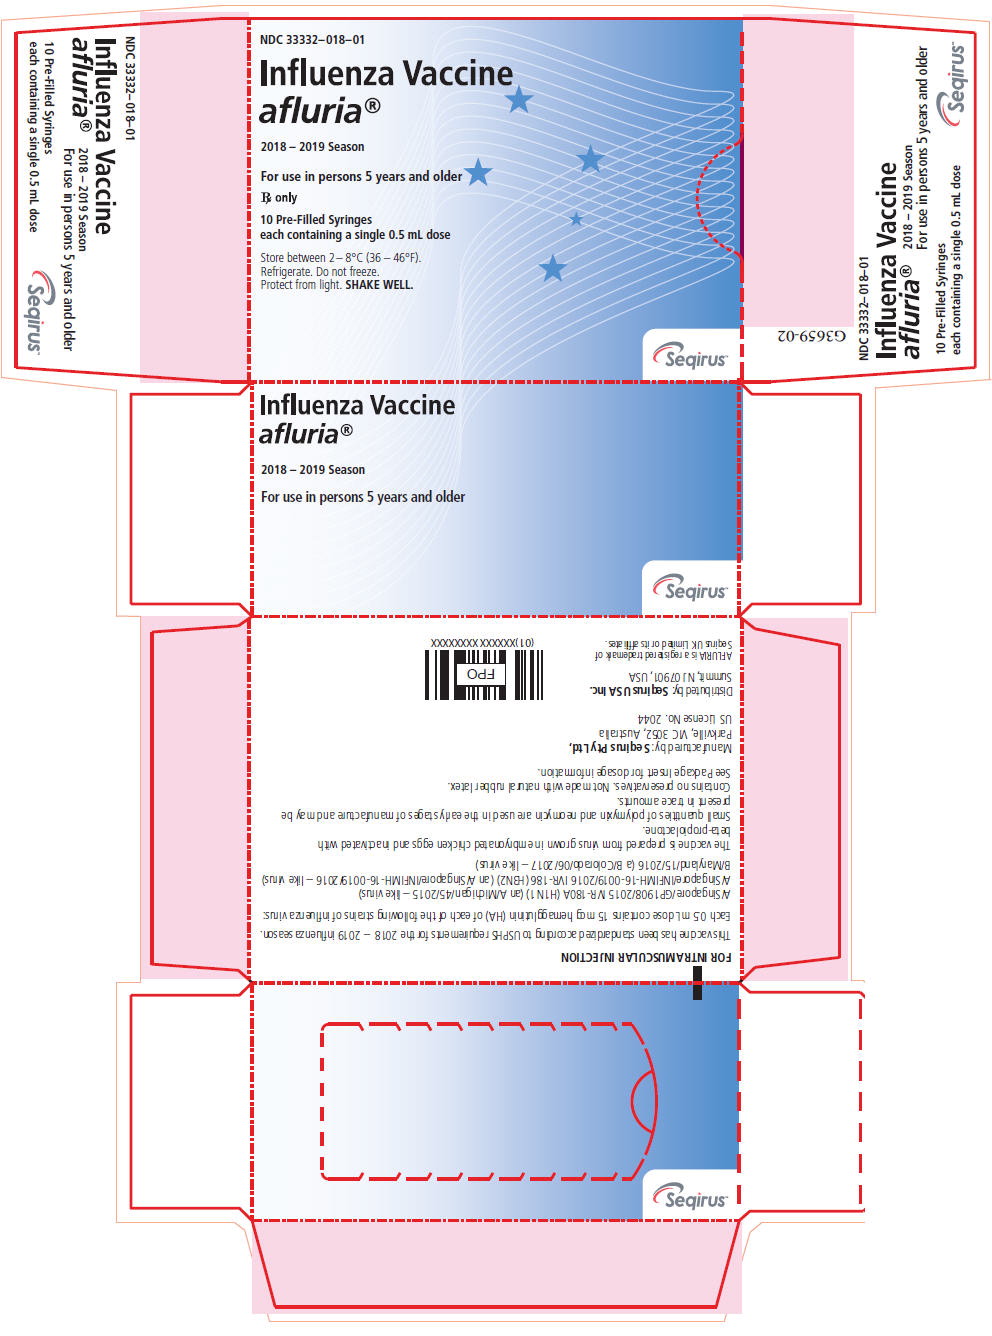 Principal Display Panel - 0.5 mL Syringe Carton